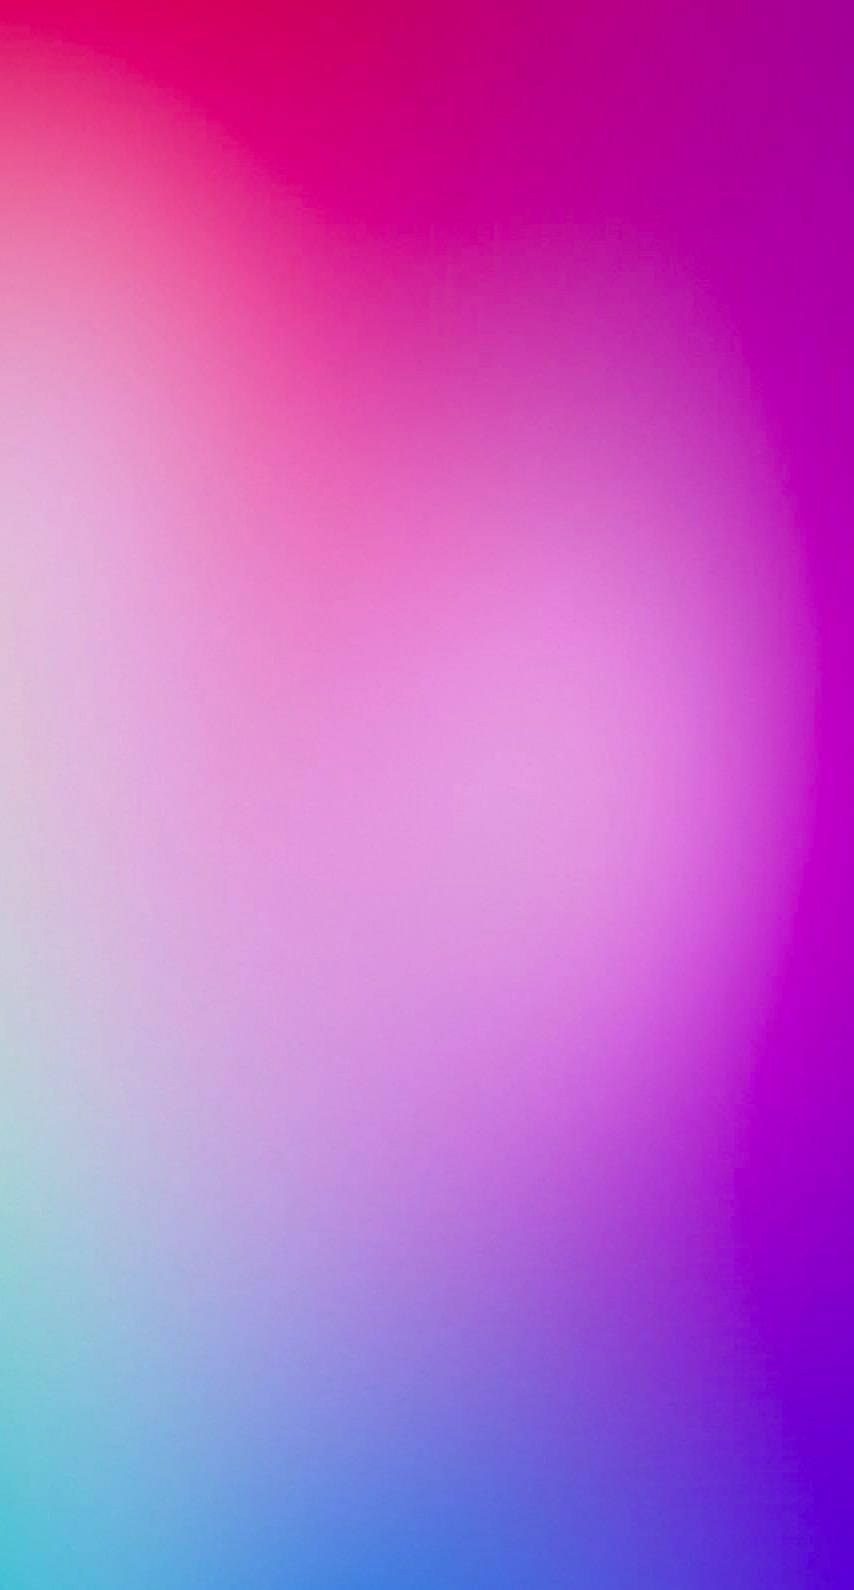 ディズニー画像ランド 心に強く訴える紫 Iphone 壁紙 グラデーション